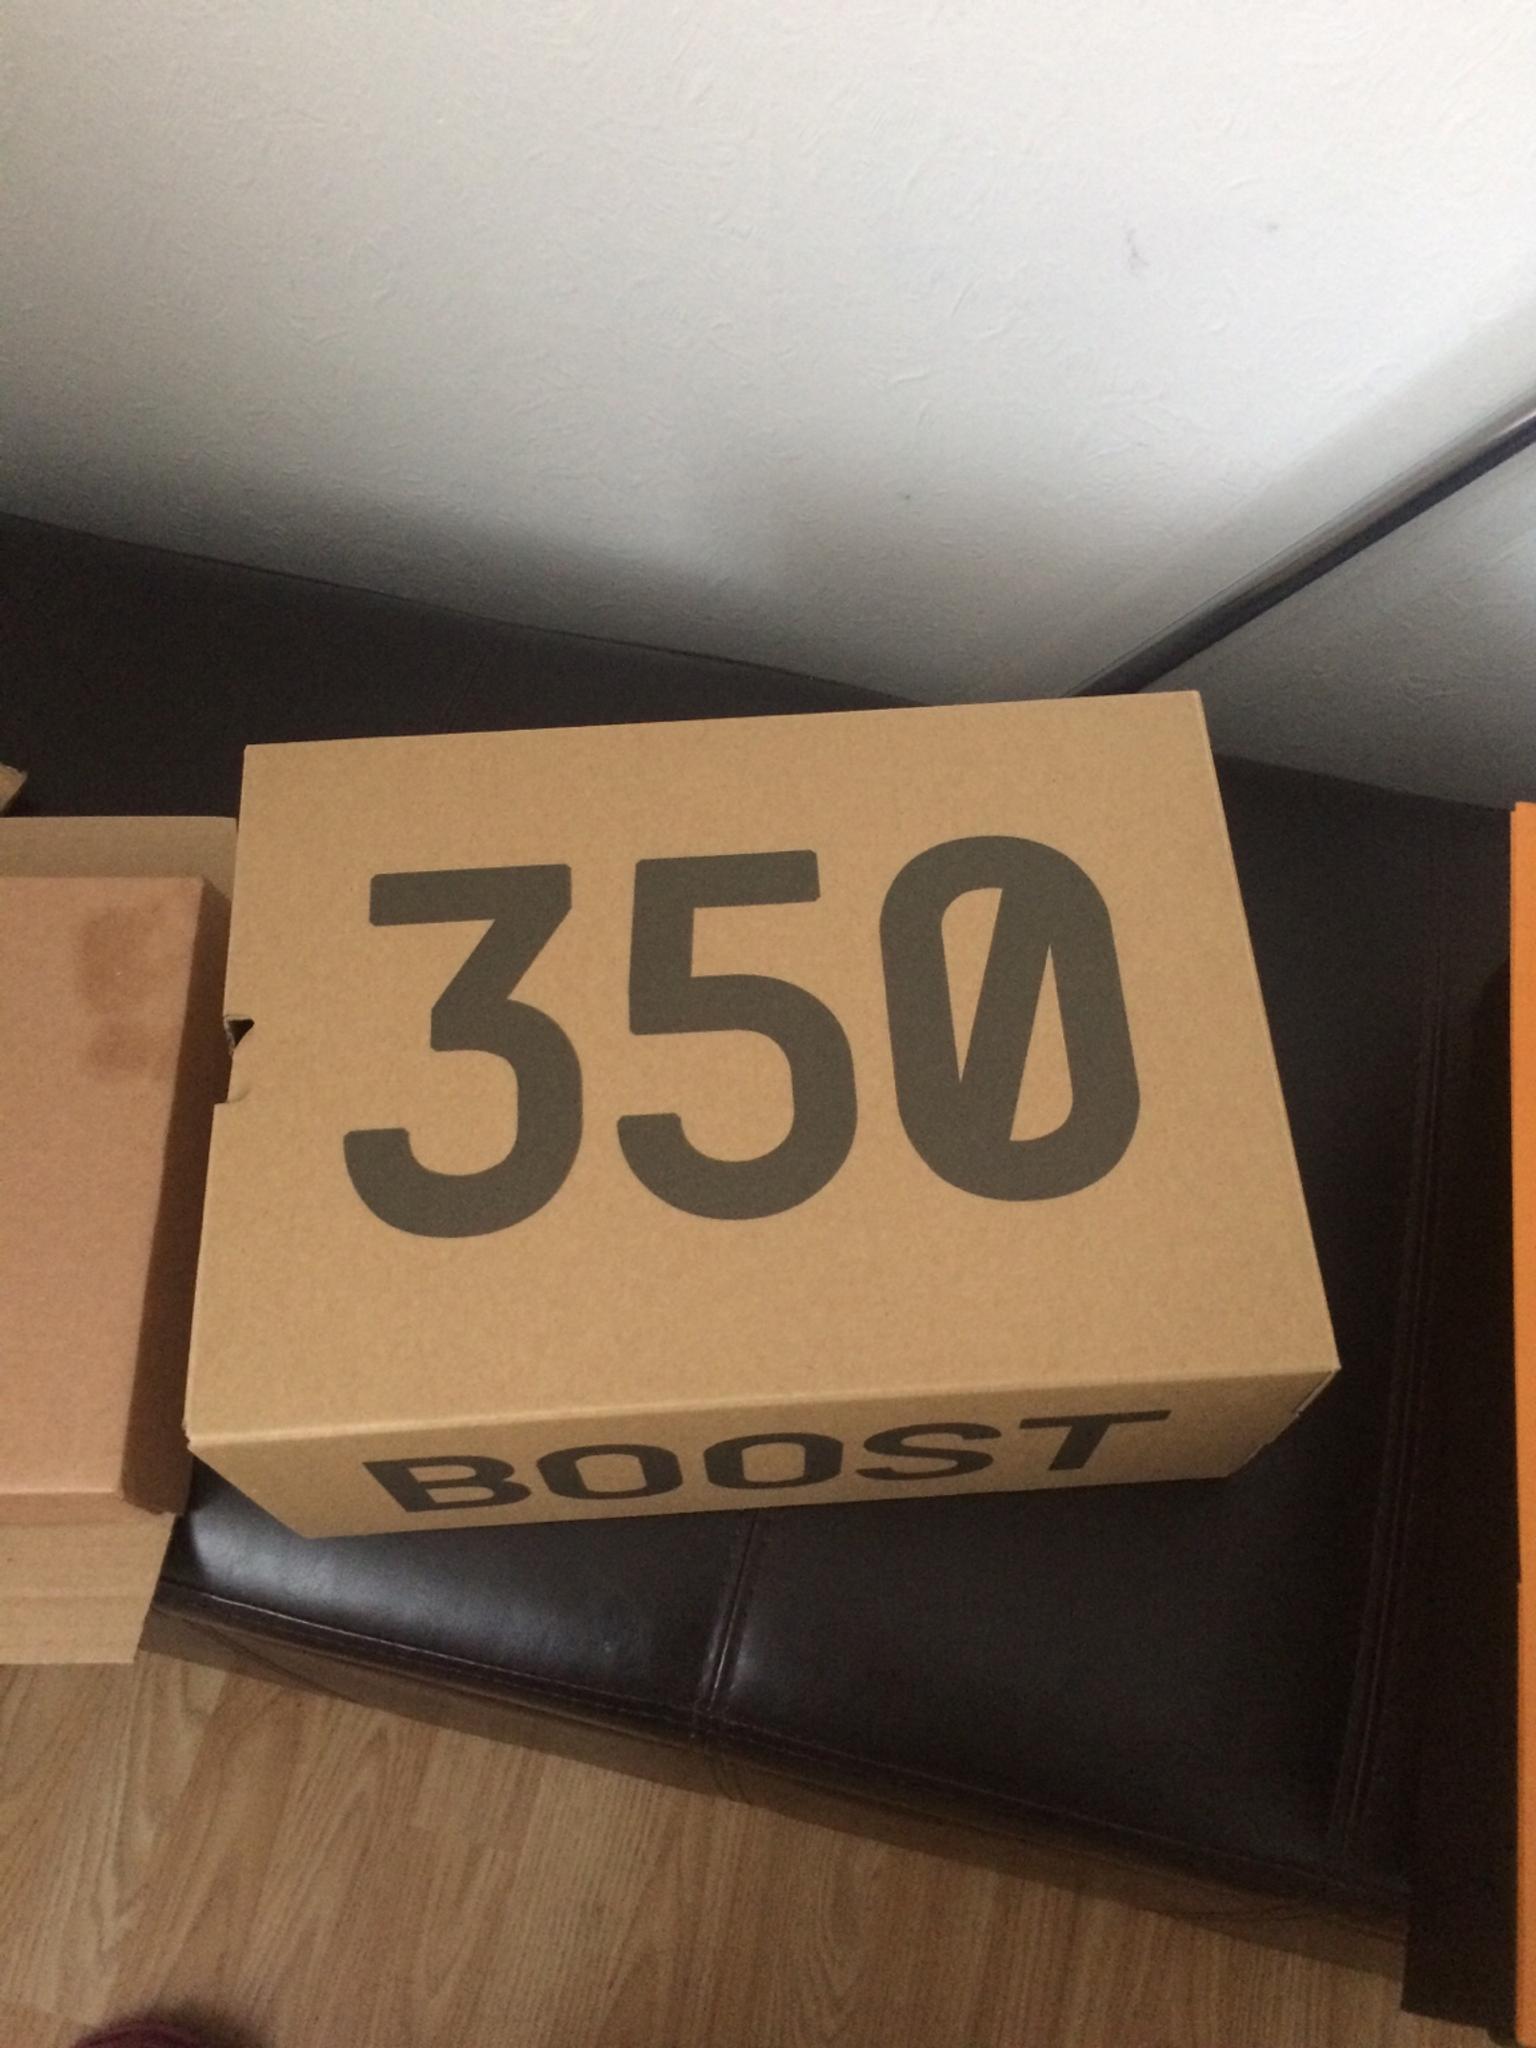 350 yeezy box